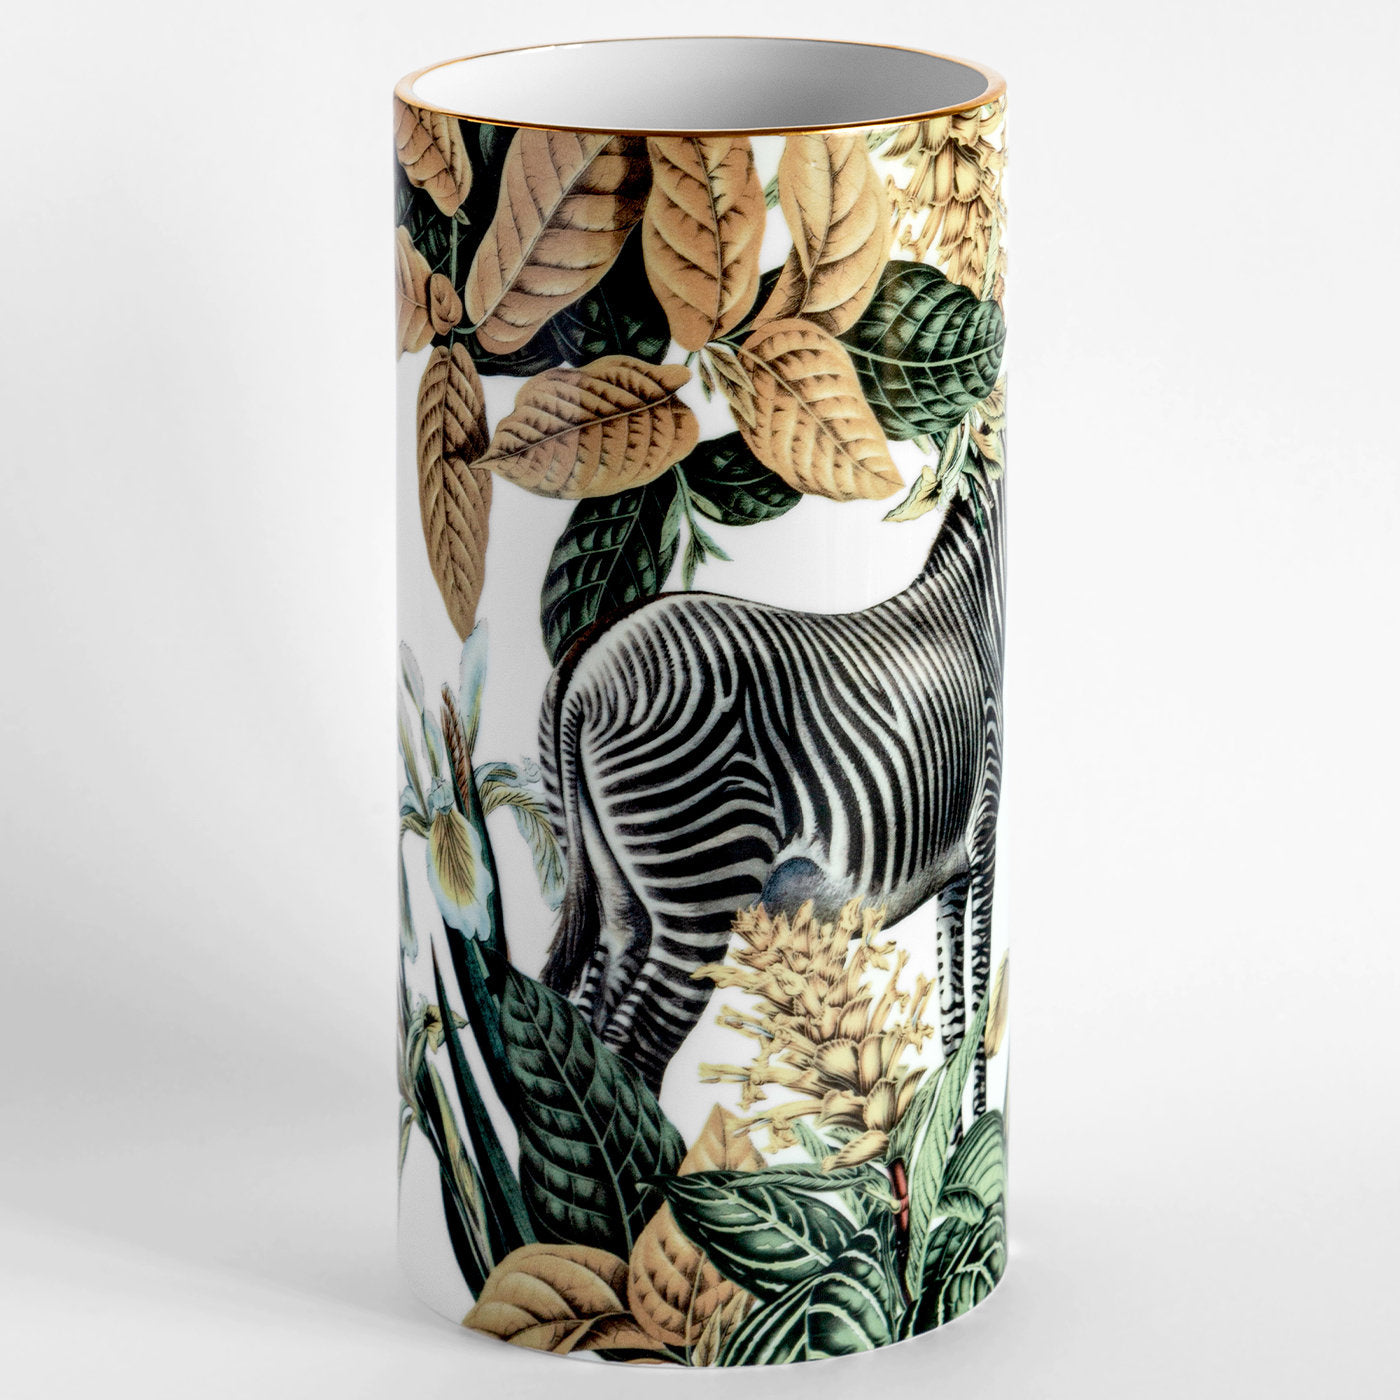 Animalia Porzellan Zylindrische Vase mit Zebra - Alternative Ansicht 1